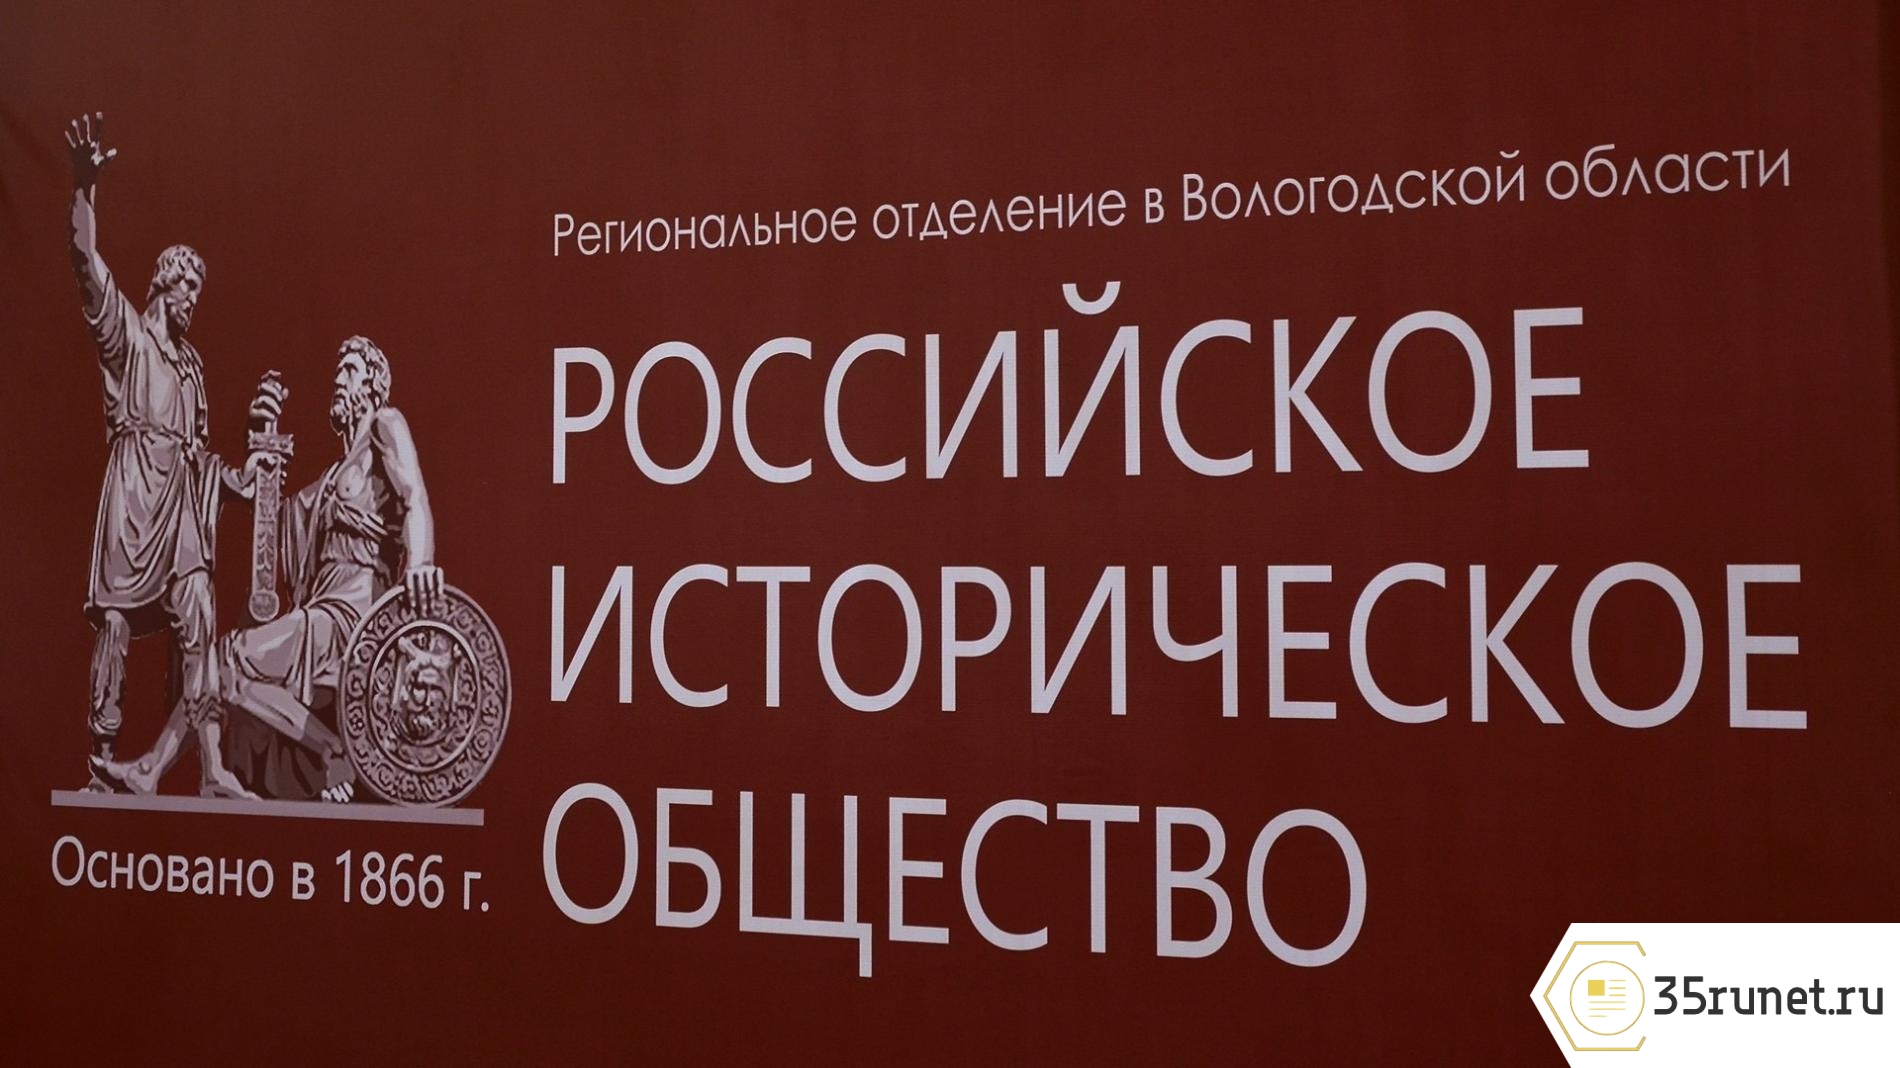 В Вологде завершился фестиваль историко-документального кино «Страницы российской истории»